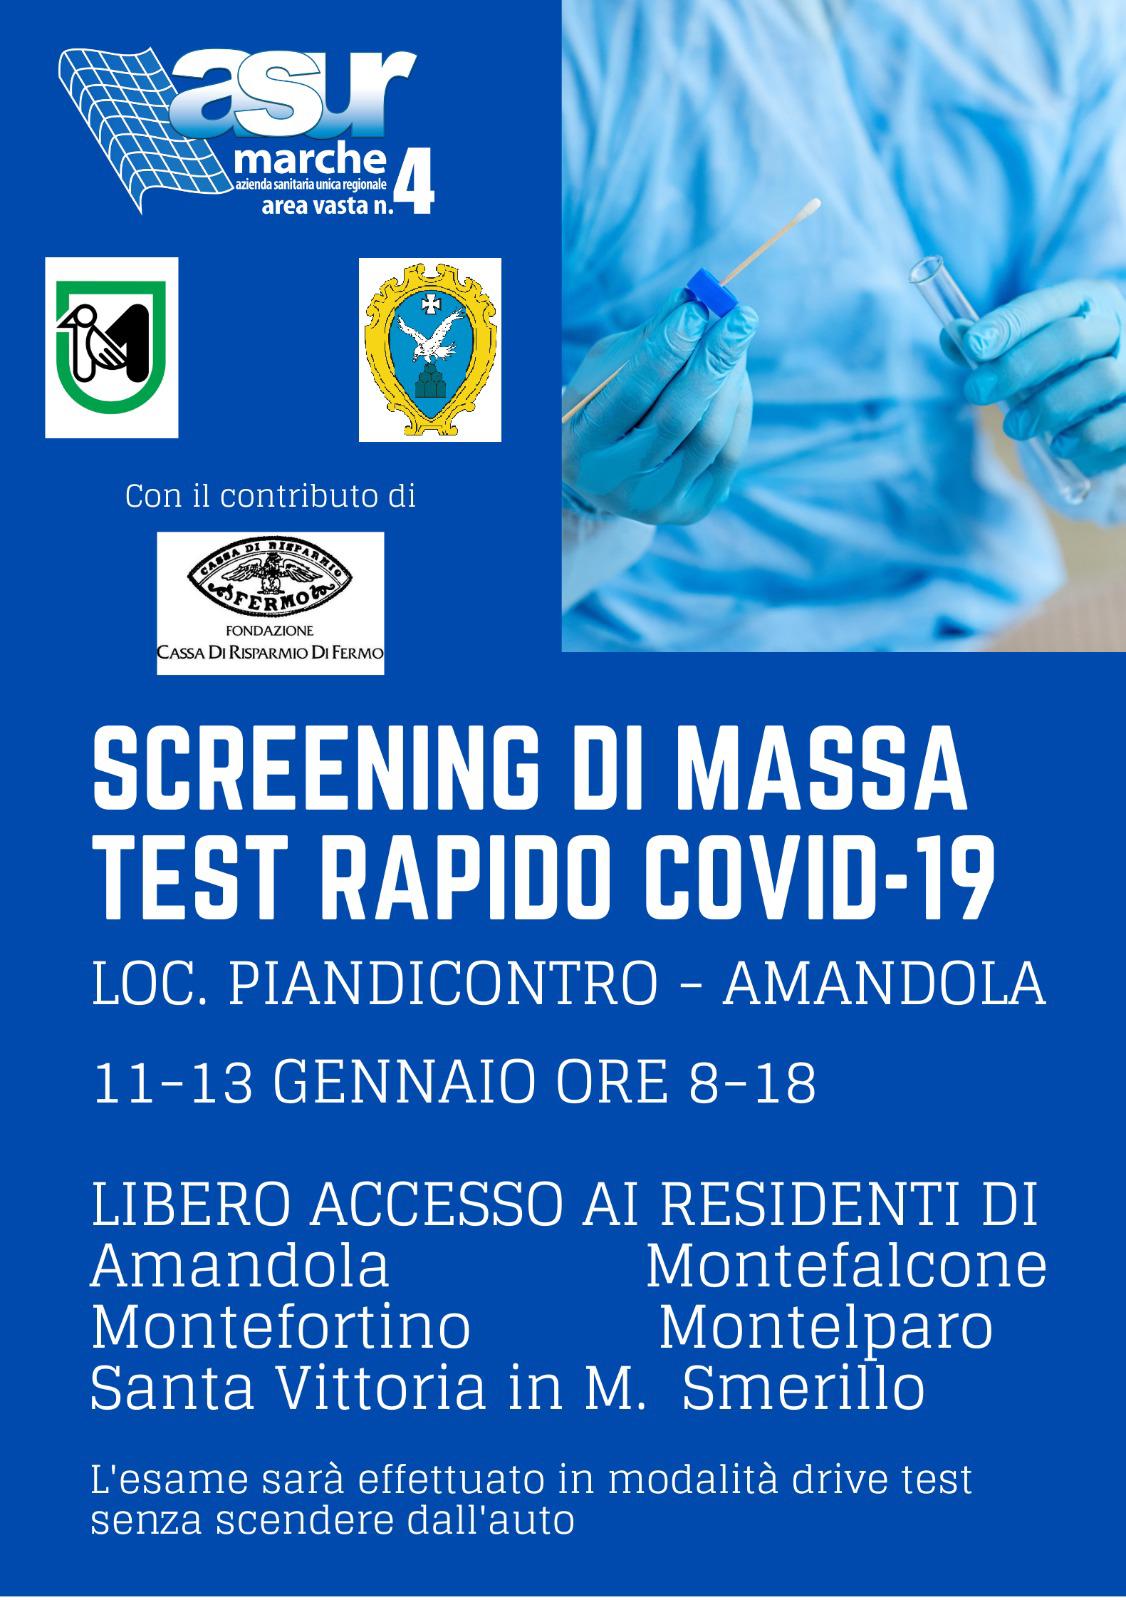 SCREENING DI MASSA TEST RAPIDO COVID-19. AGGIORNAMENTO 